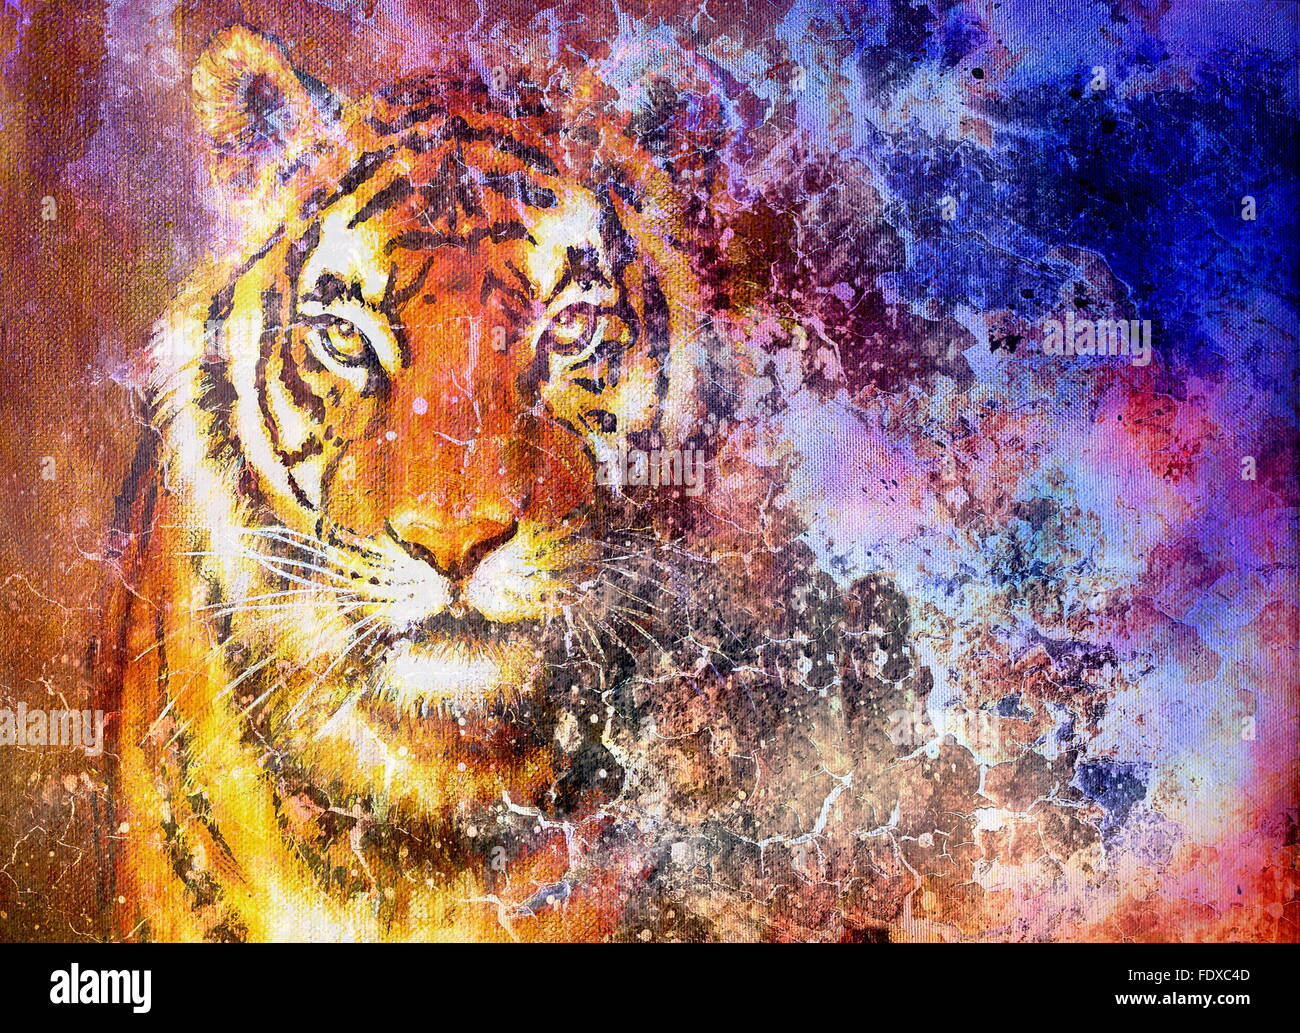 Tête de tigre dans l'espace avec des étoiles, collage de l'ordinateur. Banque D'Images